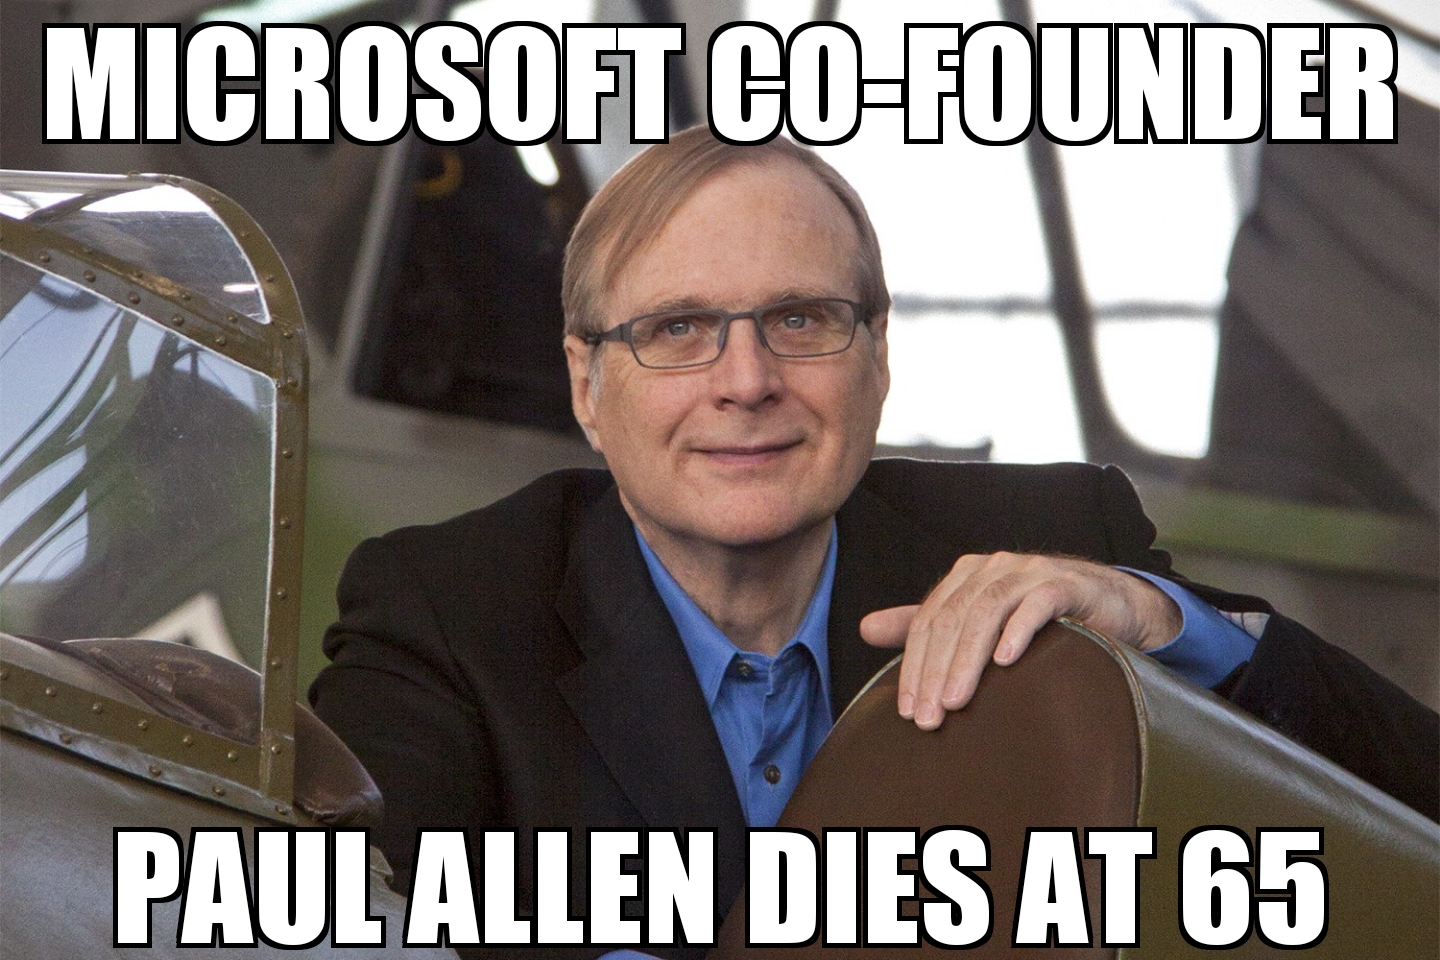 Paul Allen dies